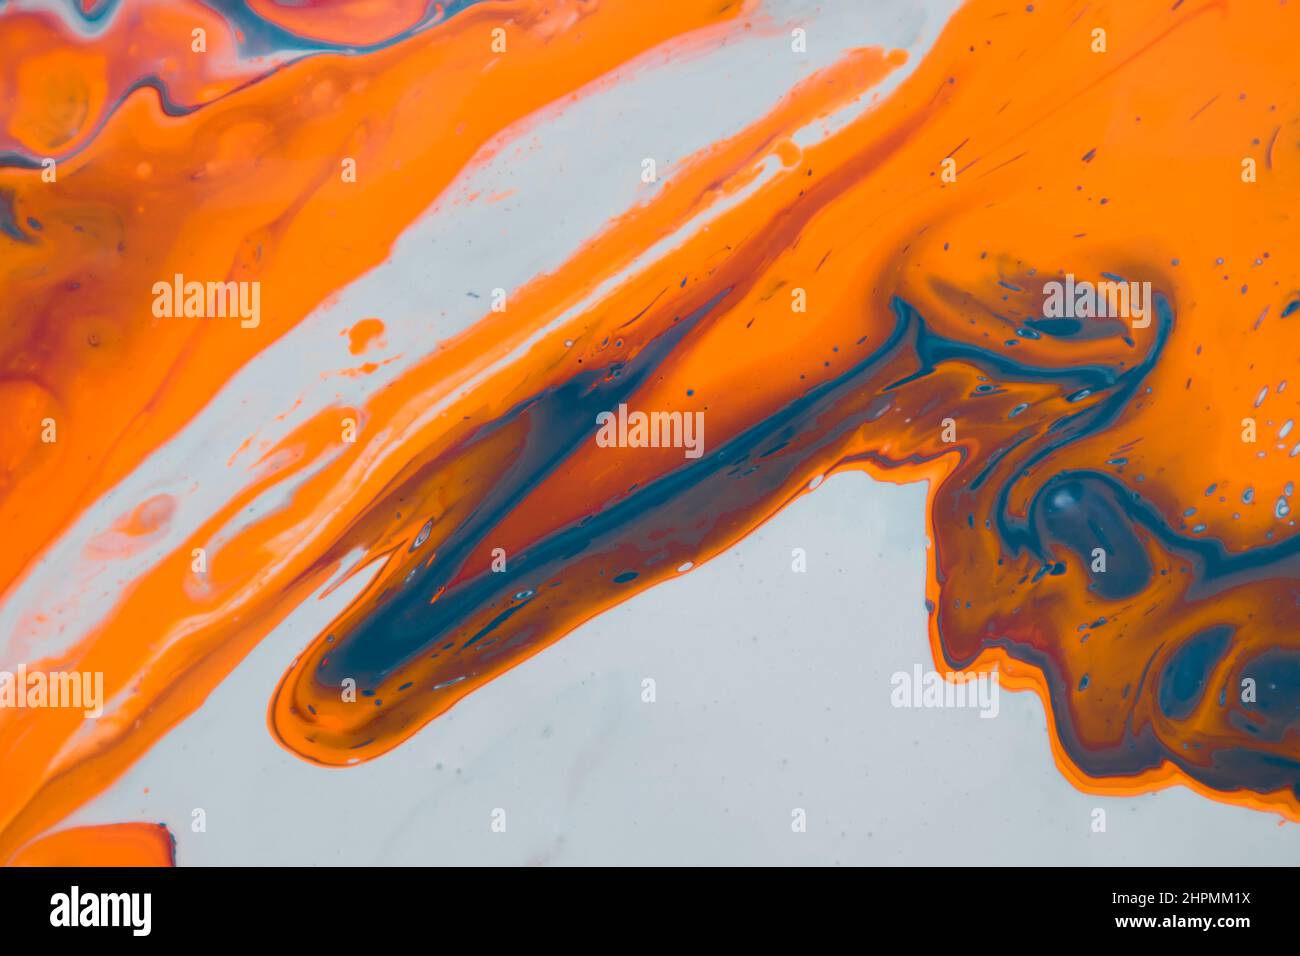 Abstrakte flüssige Acrylmalerei. Abstrakter Hintergrund in Marmorblau. Handbemalter Hintergrund mit gemischten flüssigen roten, blauen und grünen Farben. Stockfoto